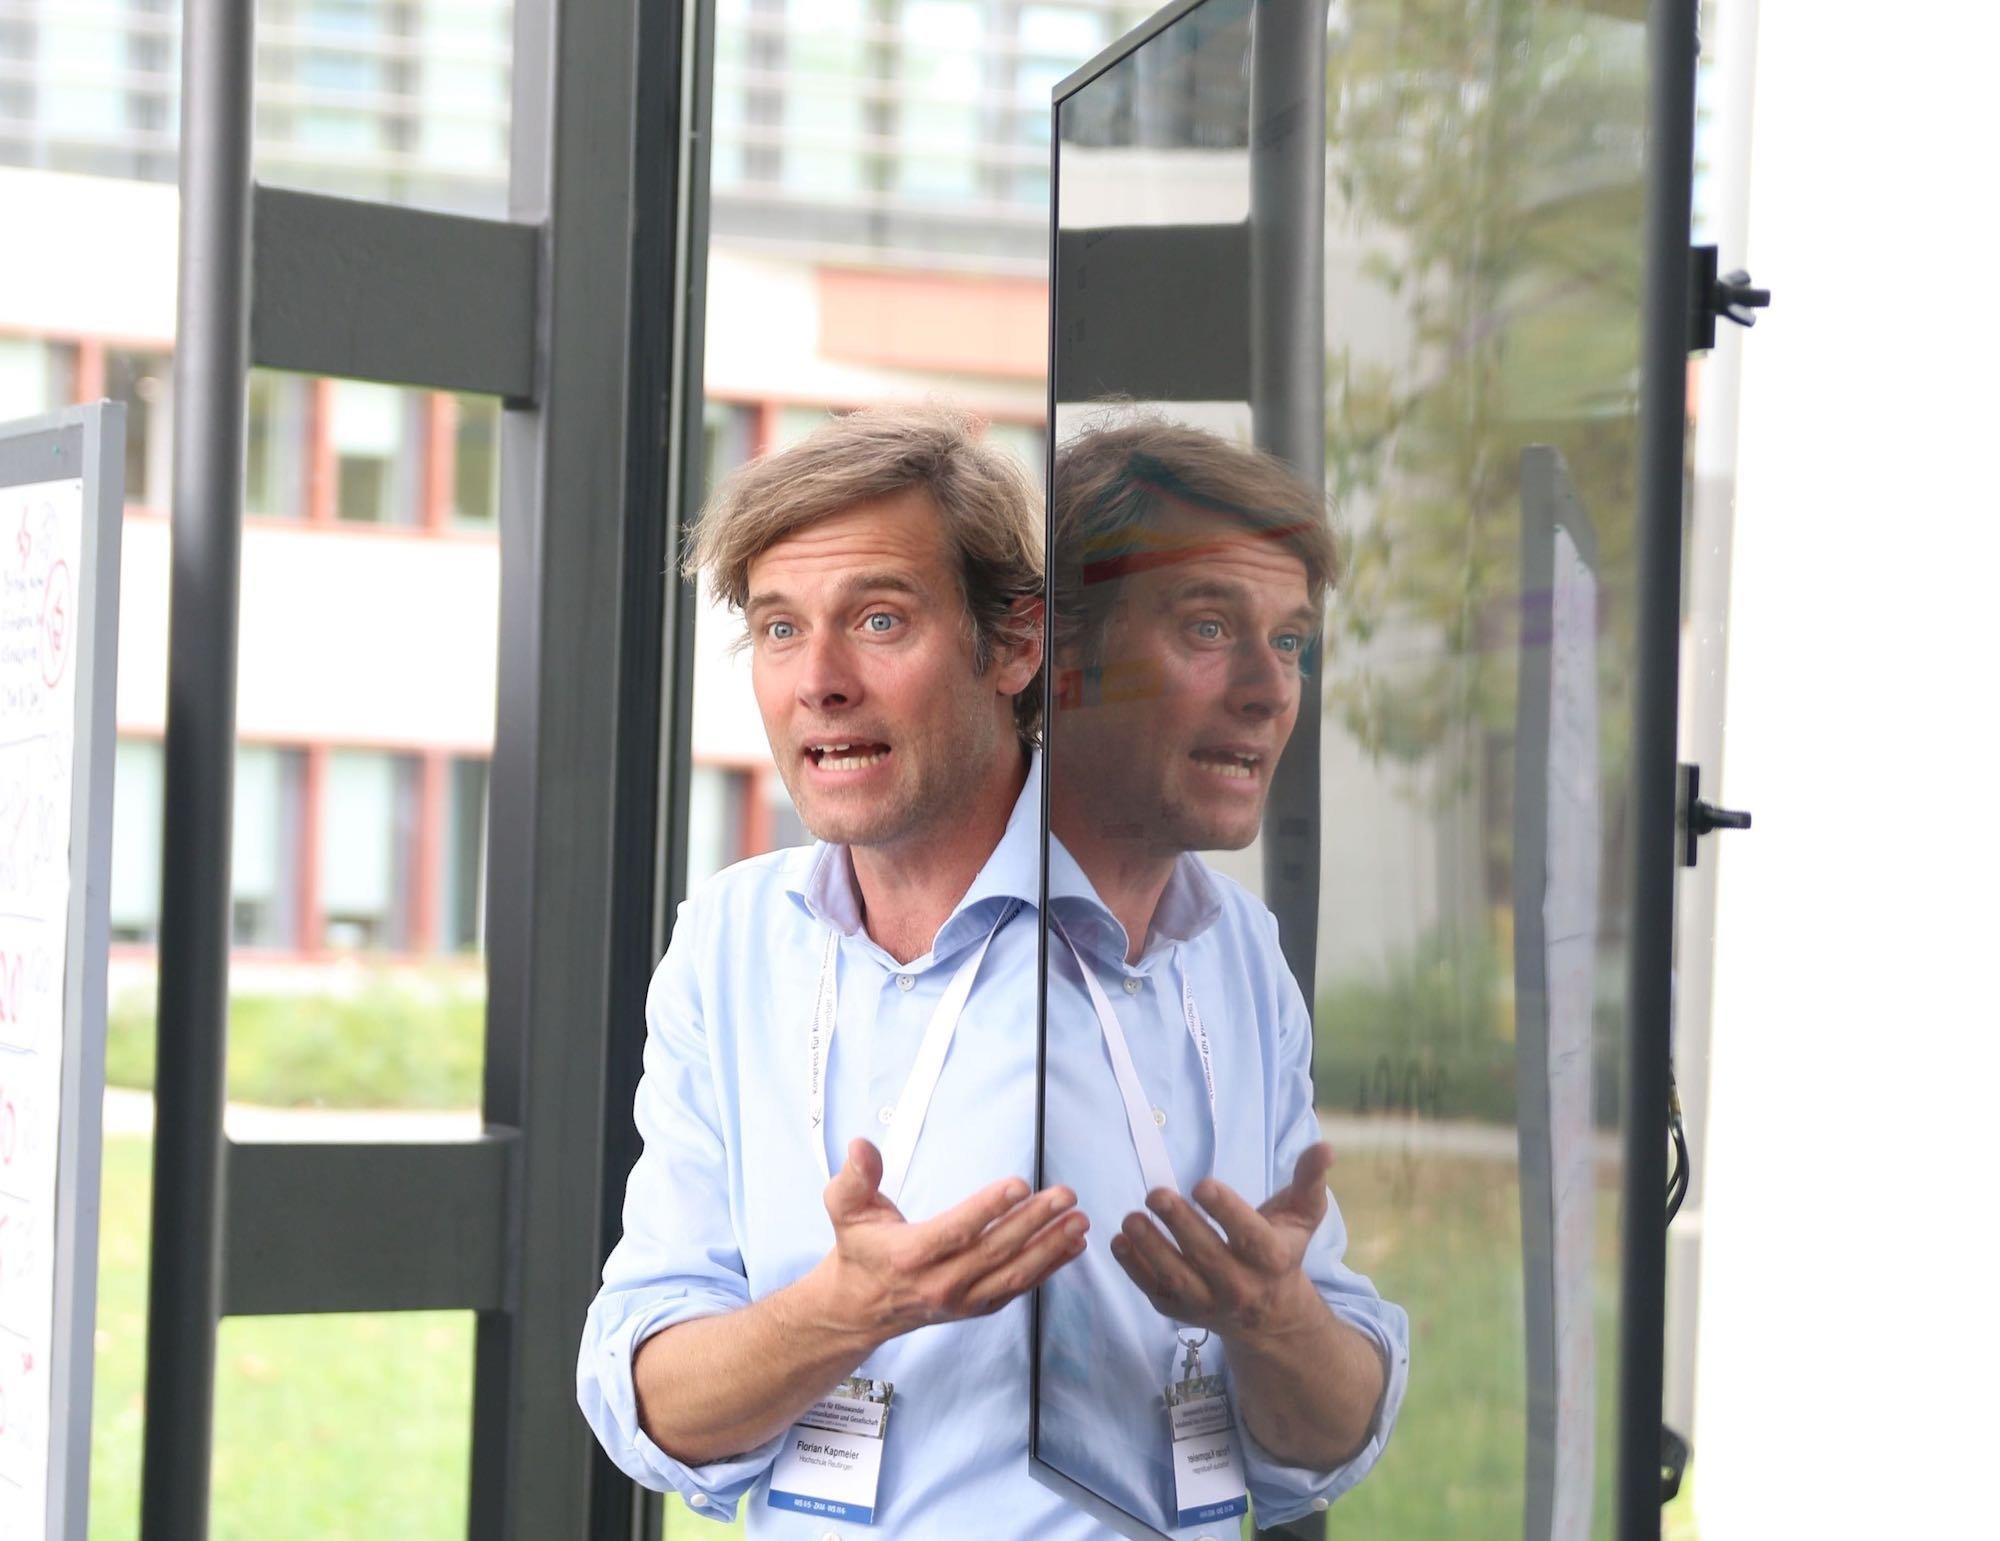 Florian Kapmeier präsentiert das En-ROADS-Modell bei einer Konferenz in Karlsruhe. Er steht vor einem Bildschirm und gestikuliert, sein Oberkörper spiegelt sich in der Glascheibe.